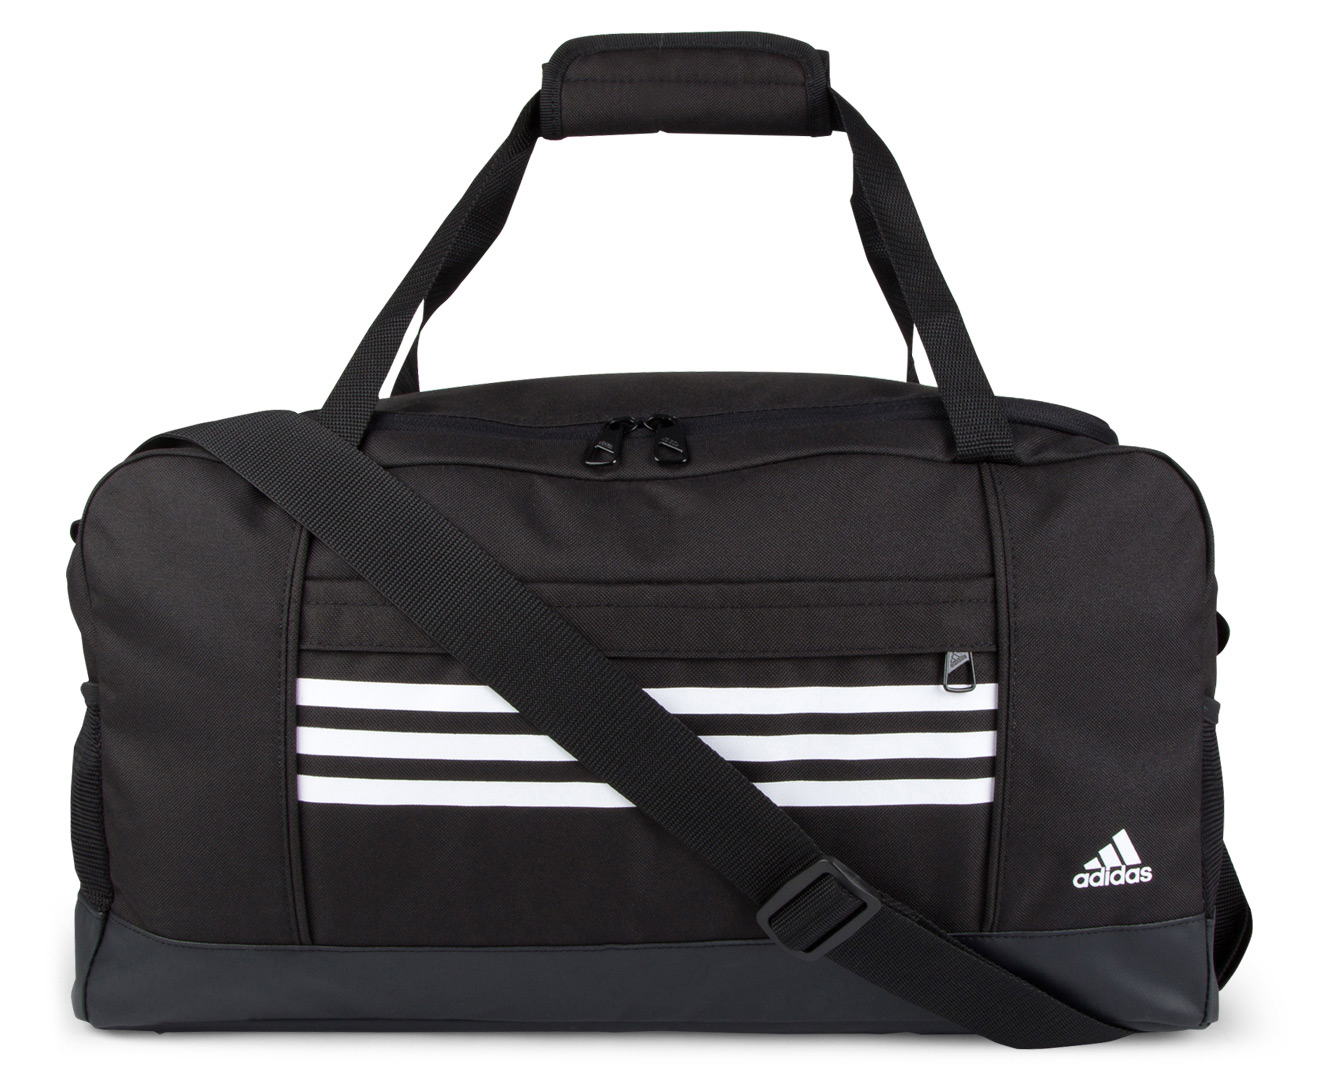 Adidas Edgars Duffle Bag - Black/White 